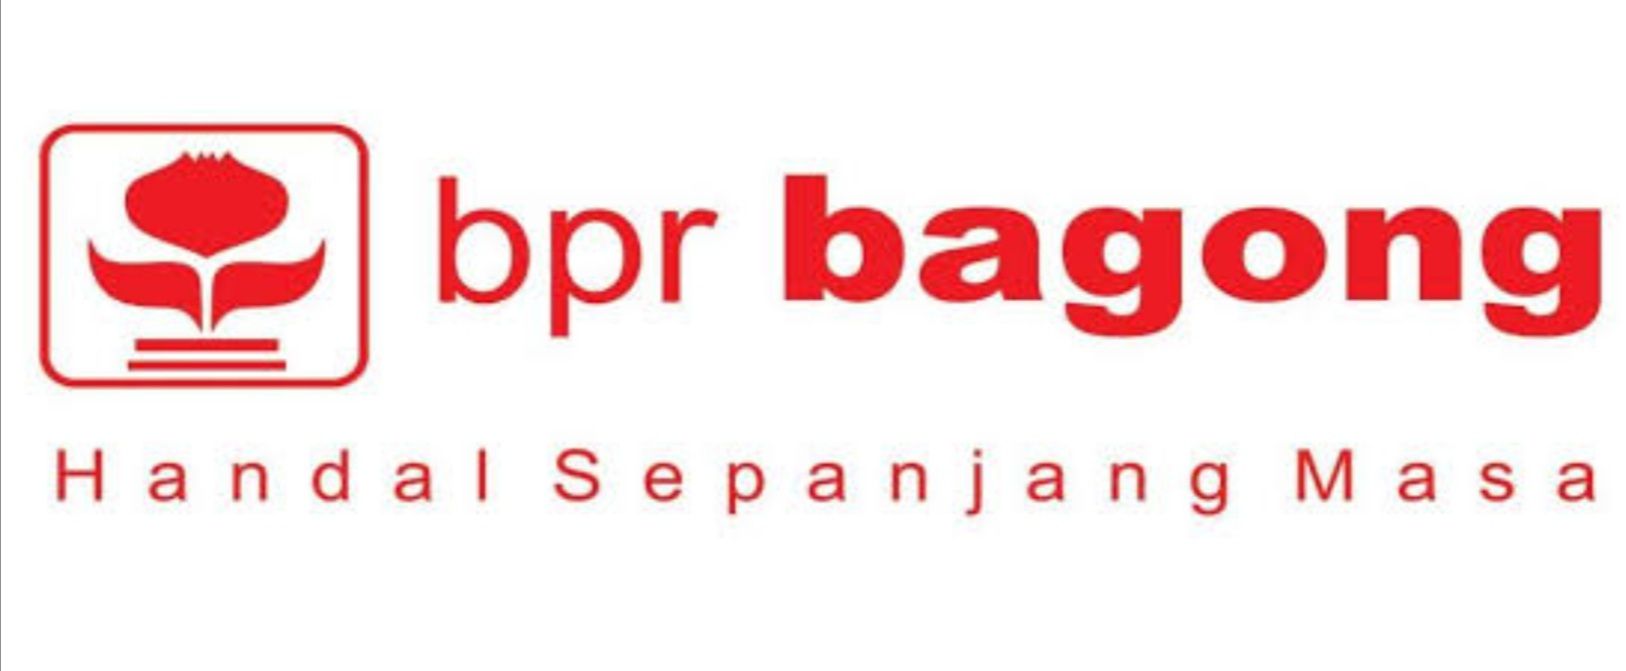 Lembaga Penjamin Simpanan (LPS) tengah melakukan proses pembayaran klaim penjaminan simpanan nasabah dan pelaksanaan likuidasi PT BPR Bagong Inti Marga, Banyuwangi Provinsi Jawa Timur.